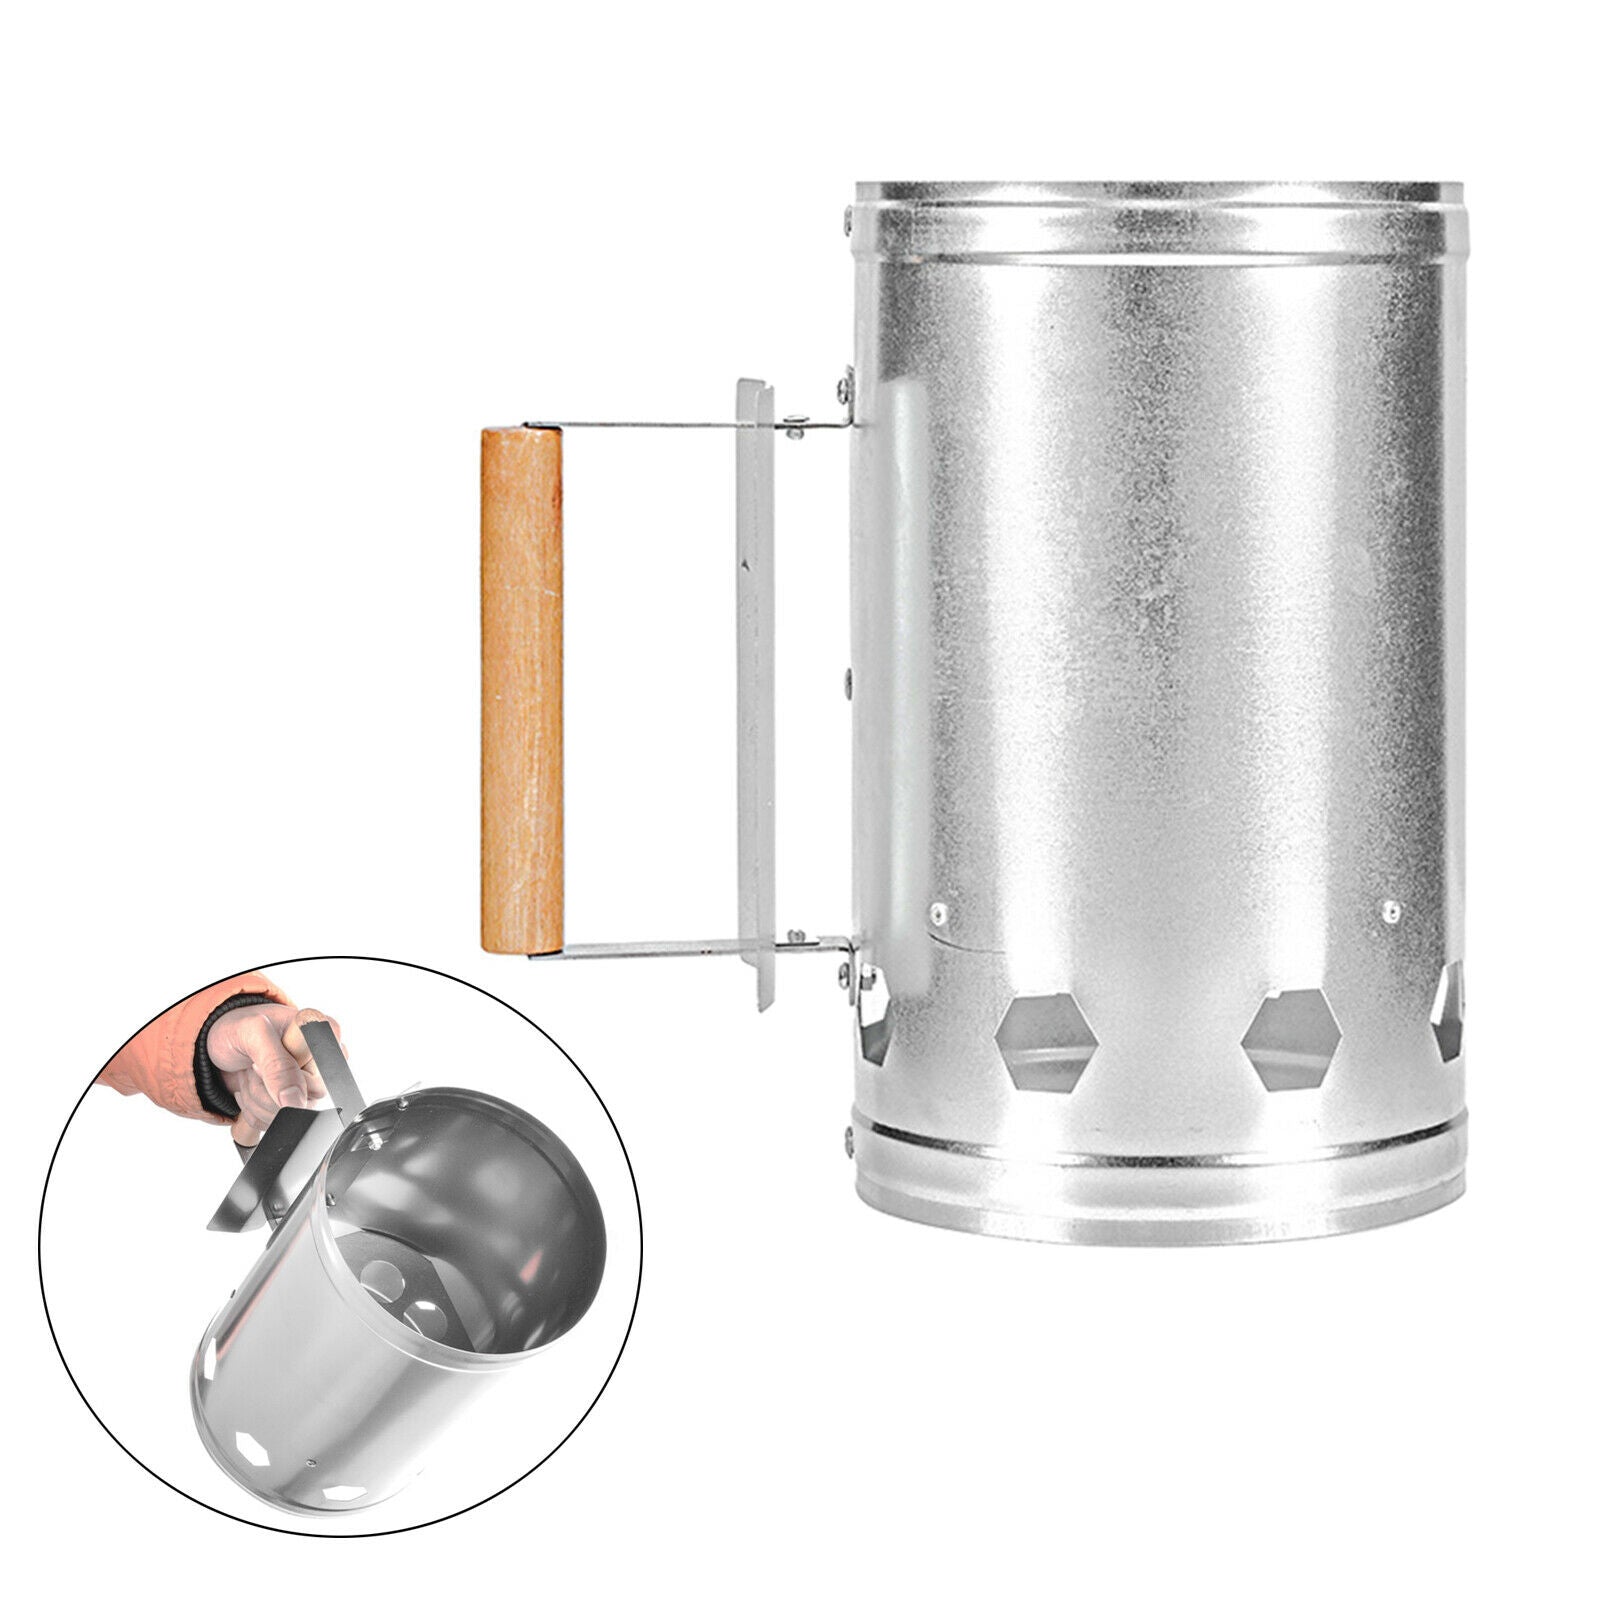 Chimney Starter BBQ Fire Lighter Burner Barrel Ignition with Handle Outdoor